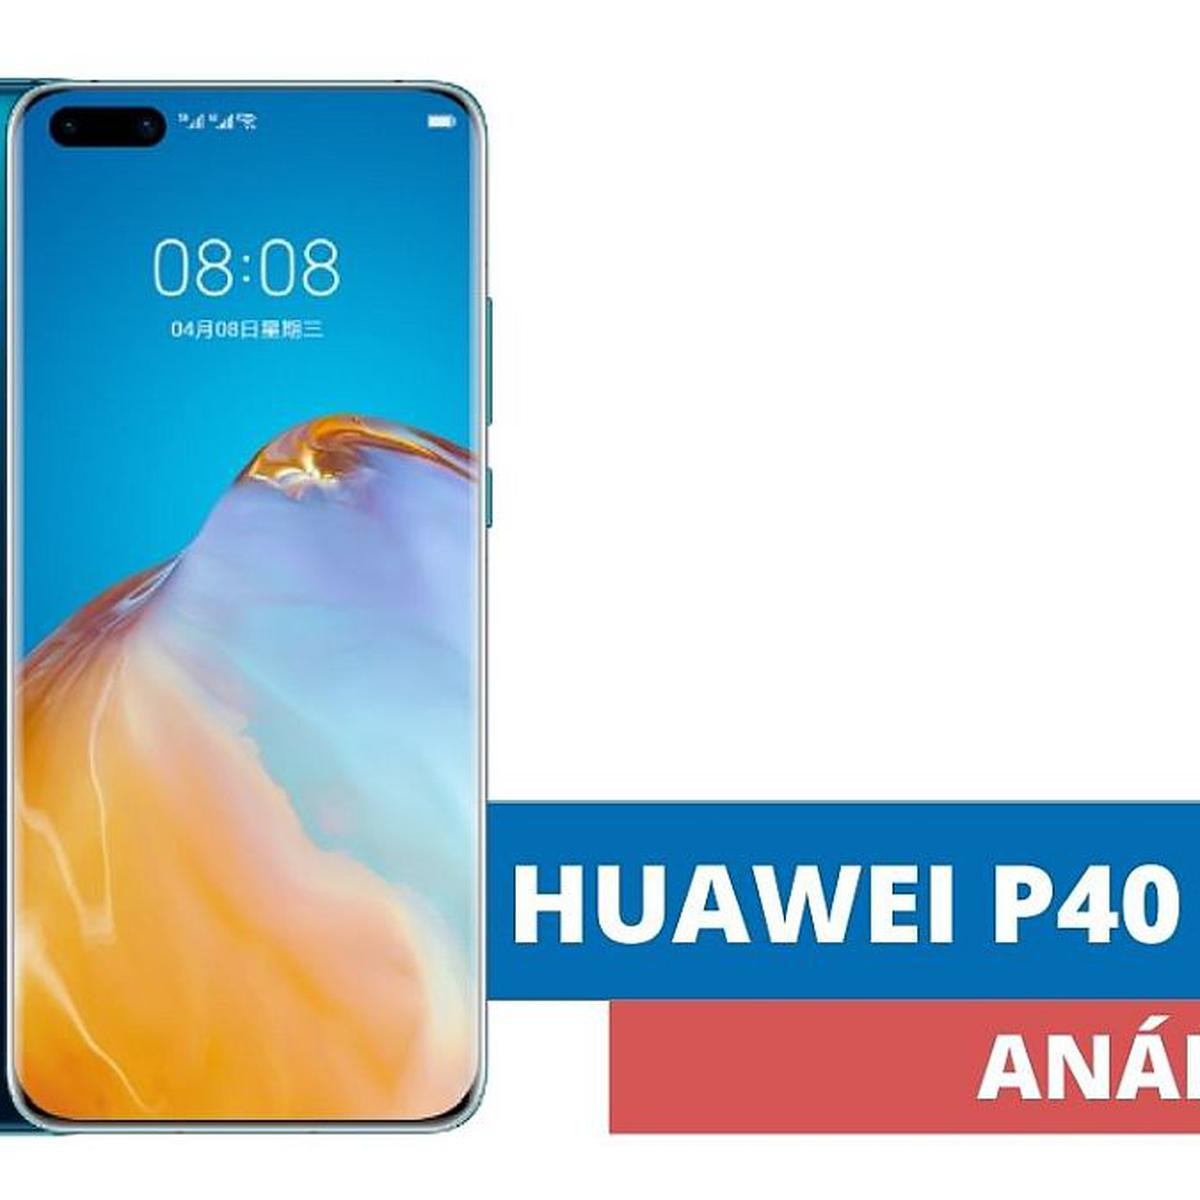 Huawei P40: Características y todos los detalles del P40 de Huawei, el  móvil de gama alta que vuelve a apostar por la fotografía.